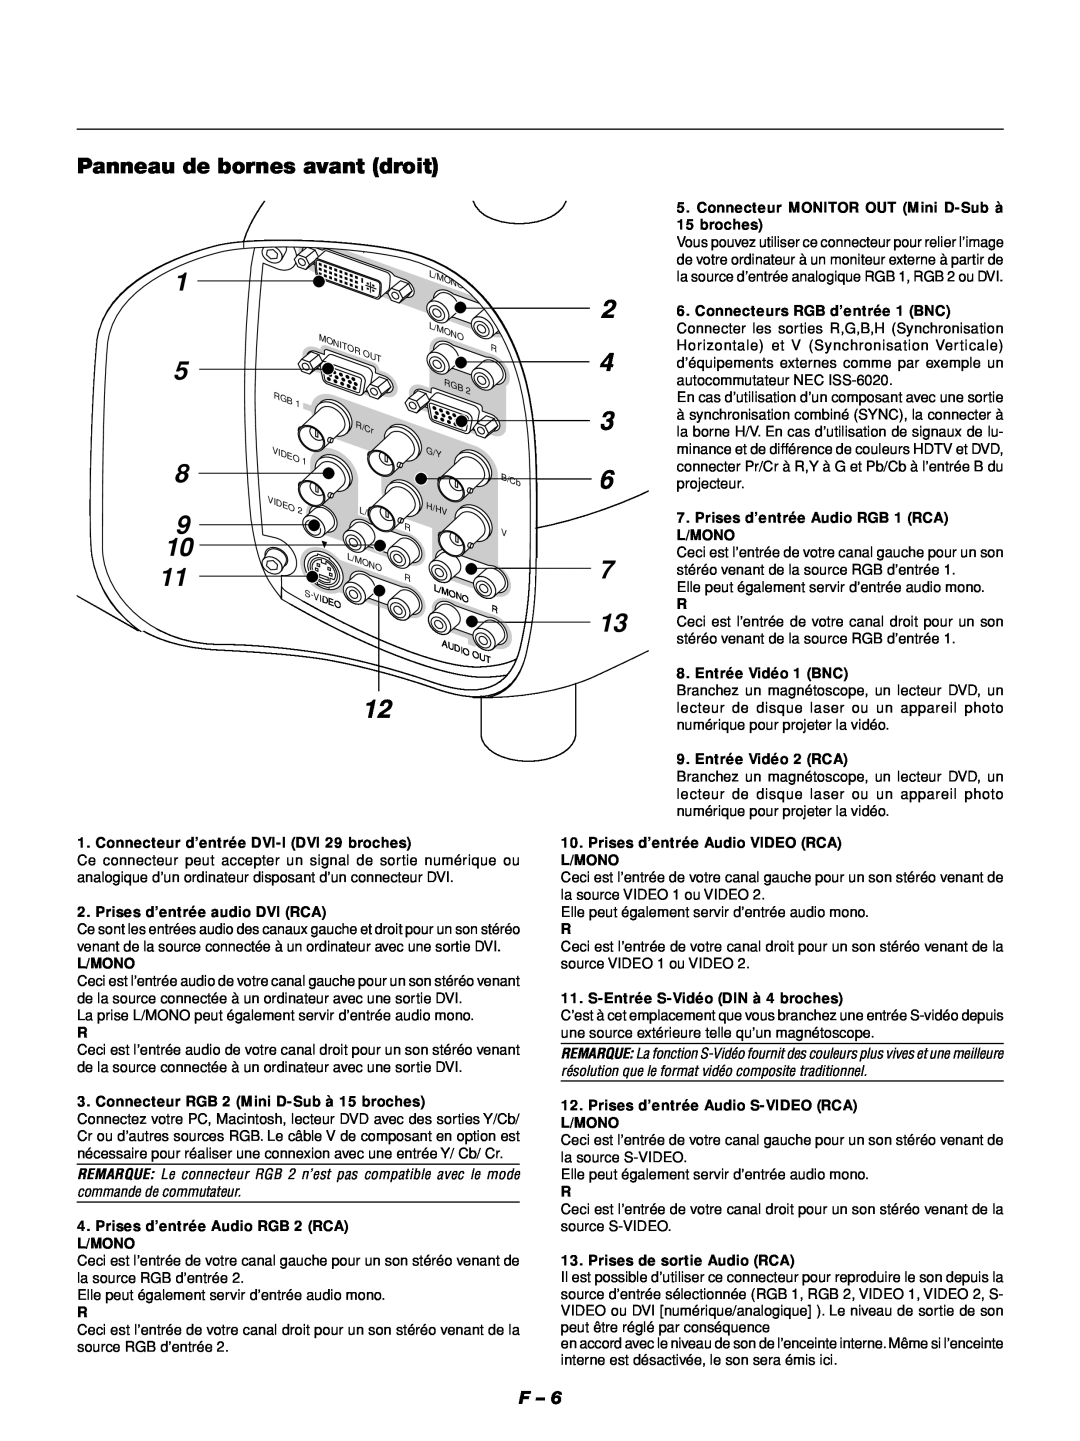 NEC GT1150 manuel dutilisation Panneau de bornes avant droit, L/Mono 